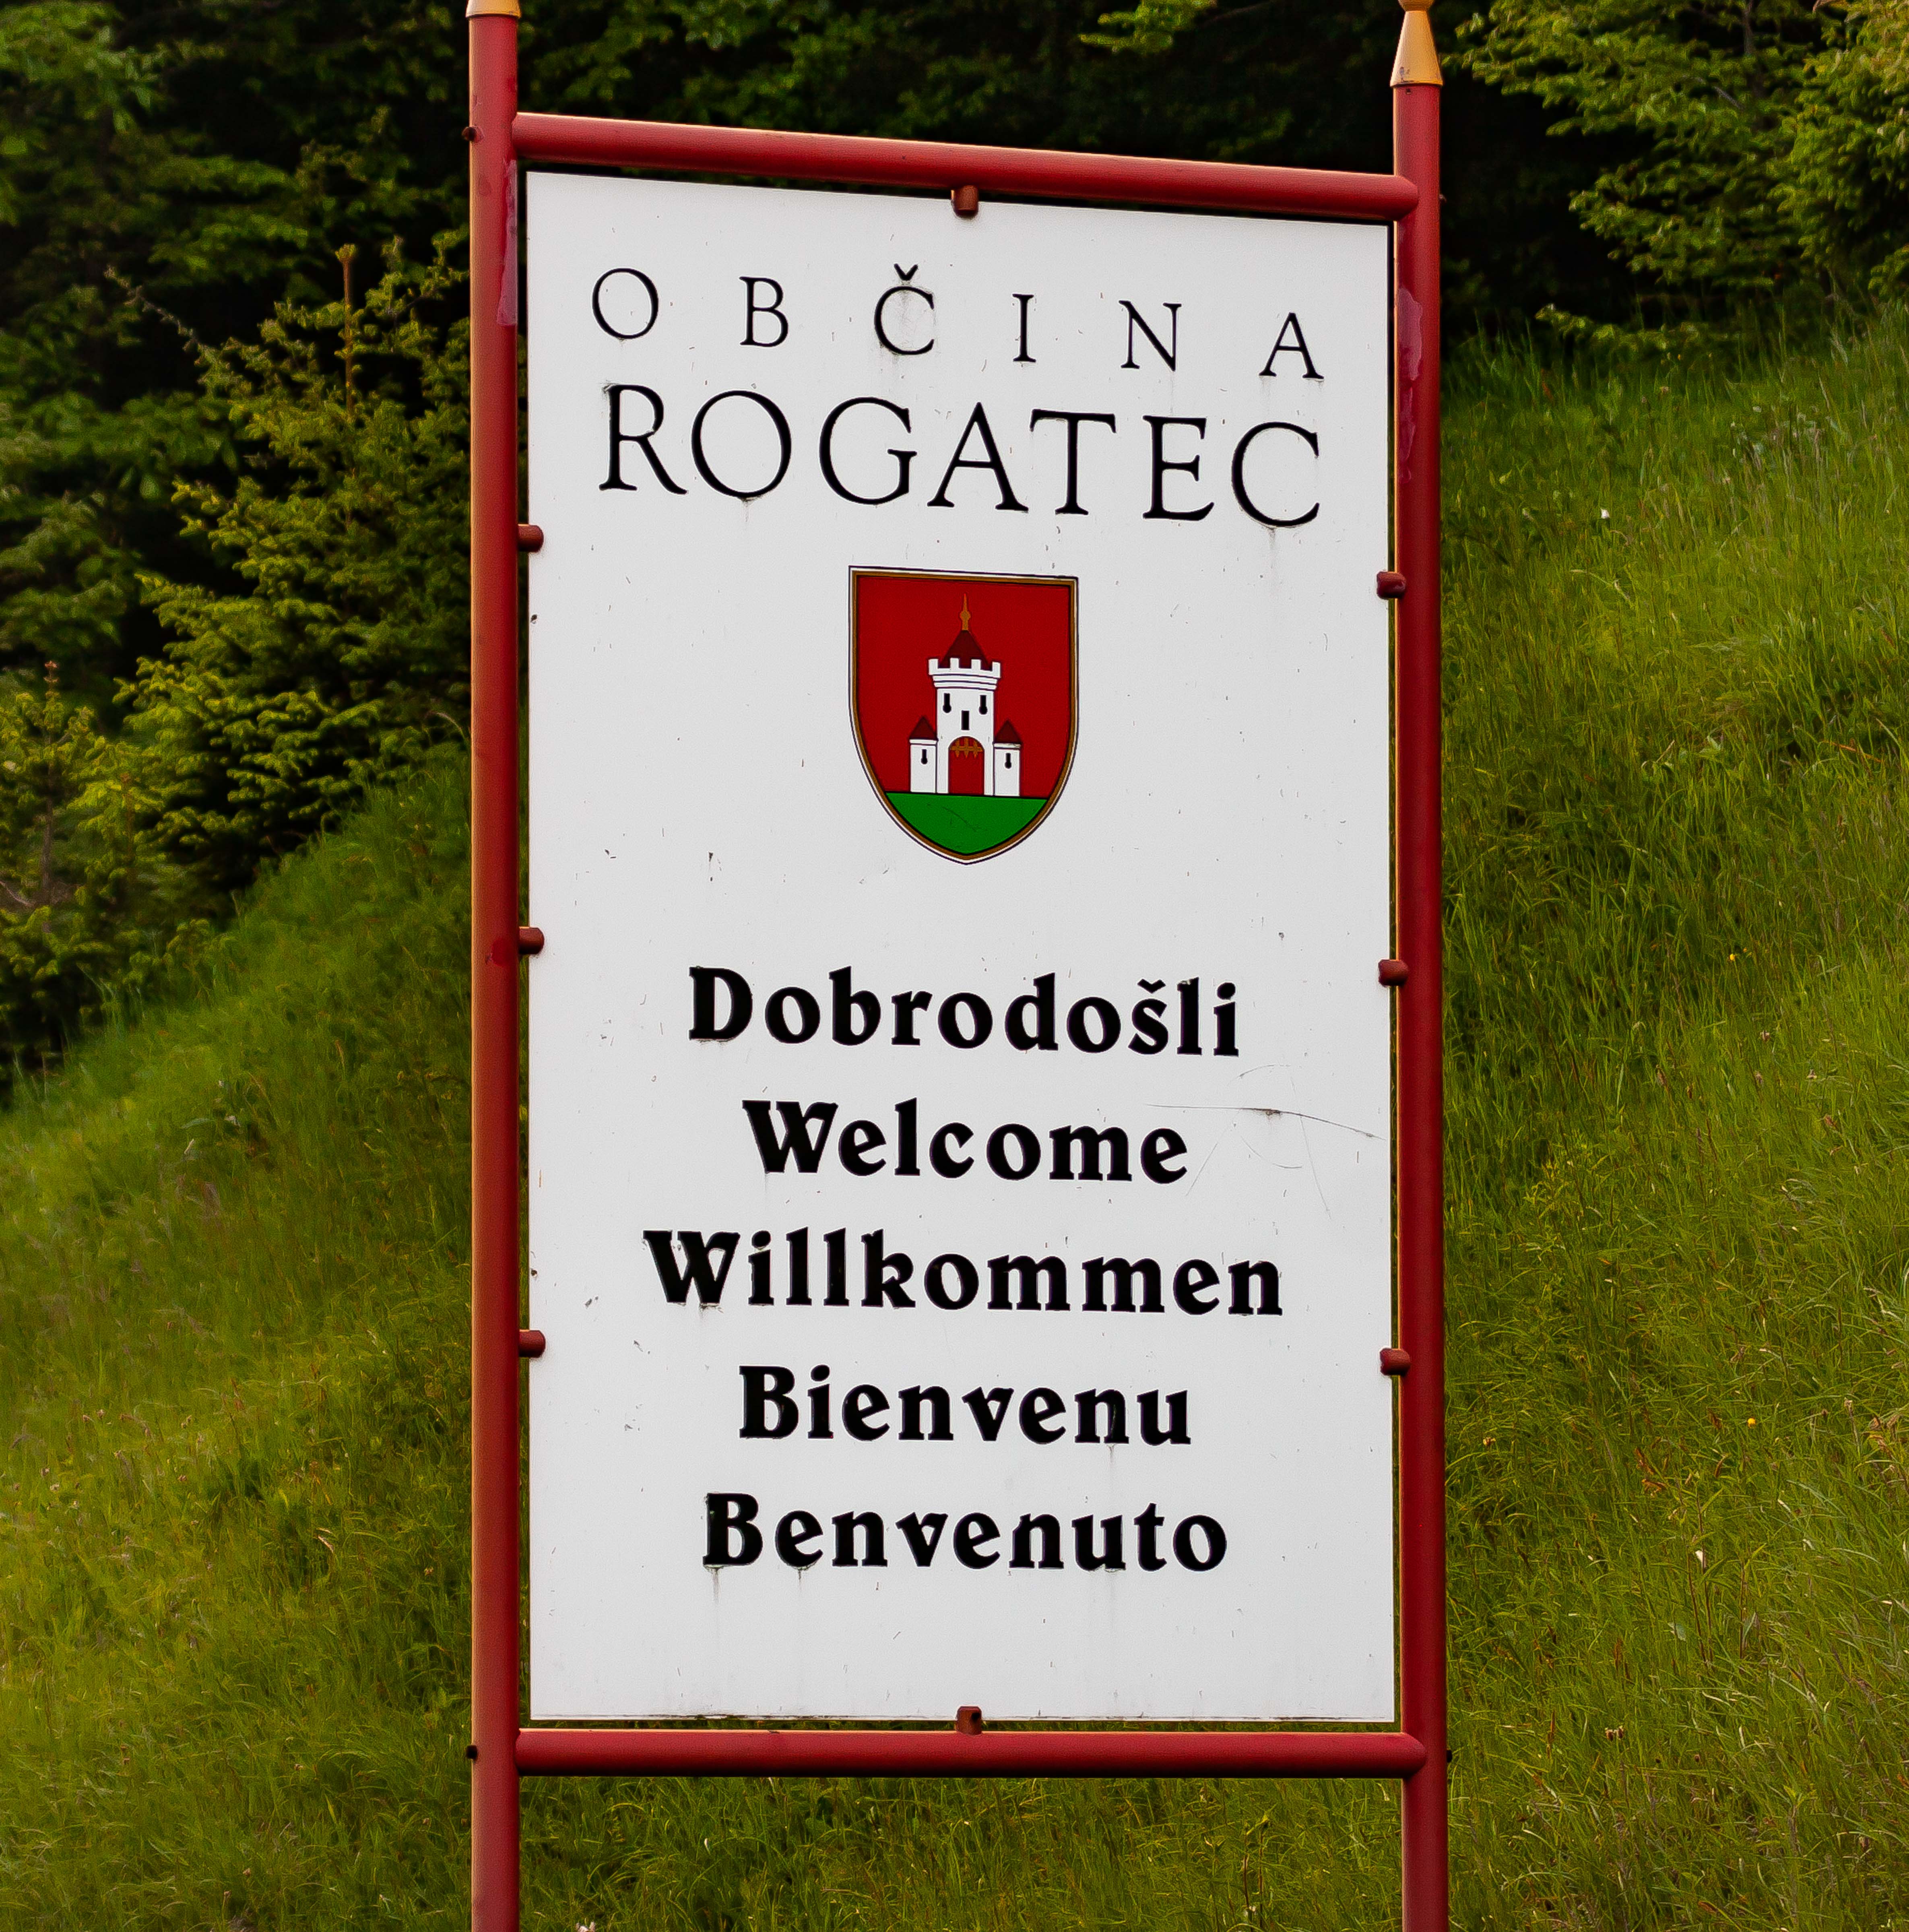 Slovenia, Rogatec Prov, Dobrodosli Obcina Rogatec, 2006, IMG 5494